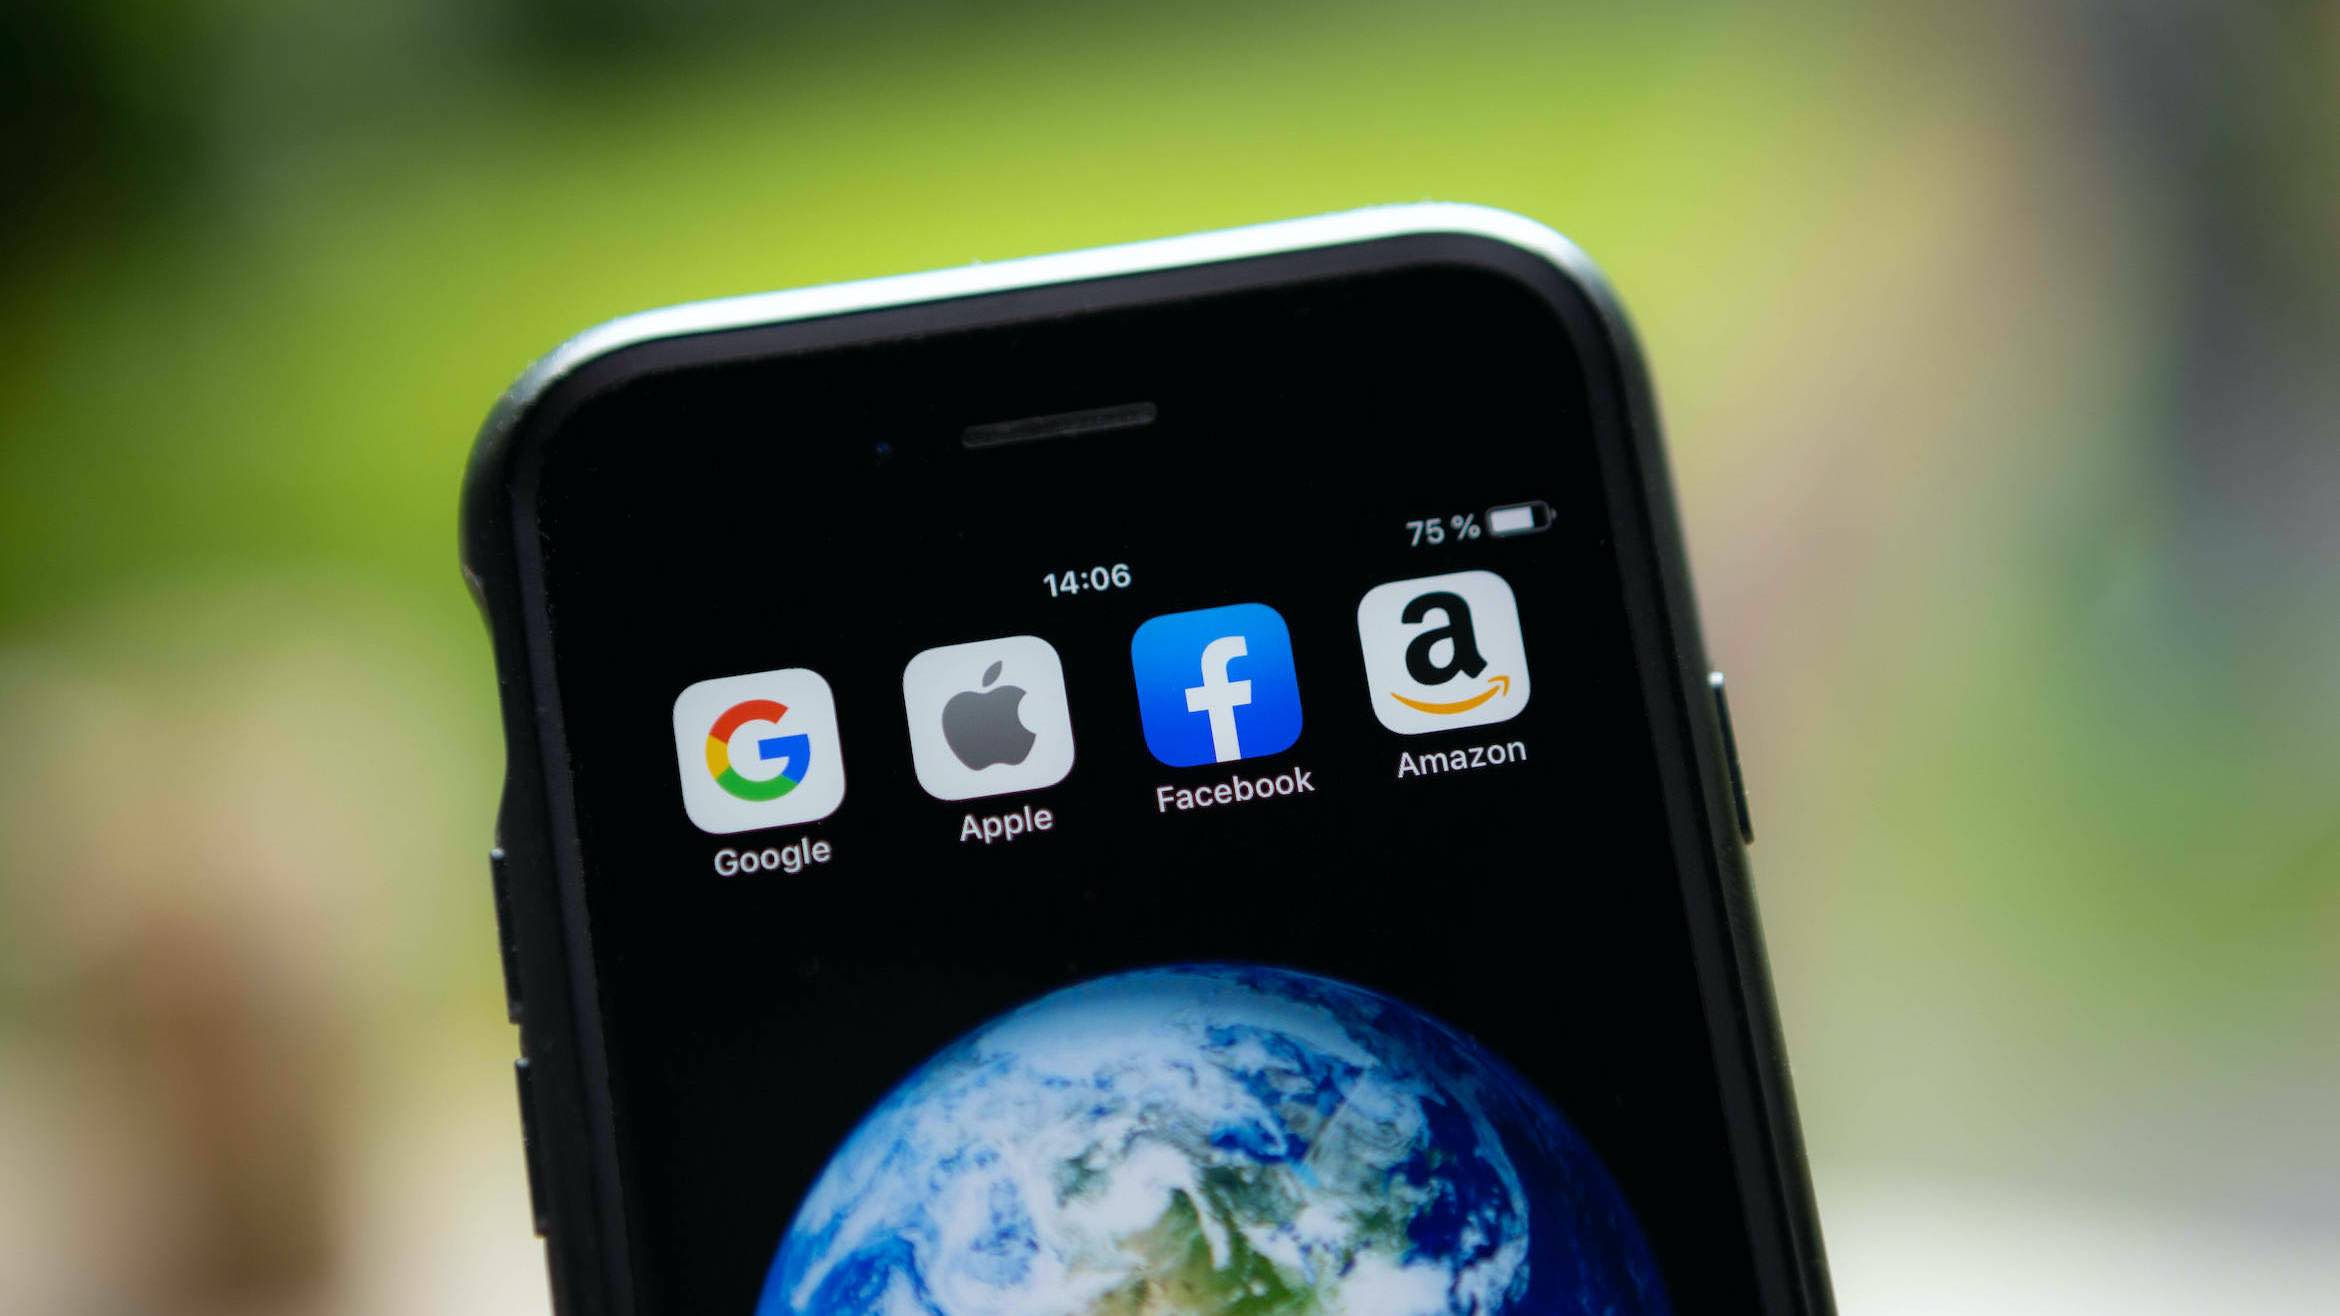 Apple setzt Maßnahmen für mehr Privatsphäre trotz Gegenwind um